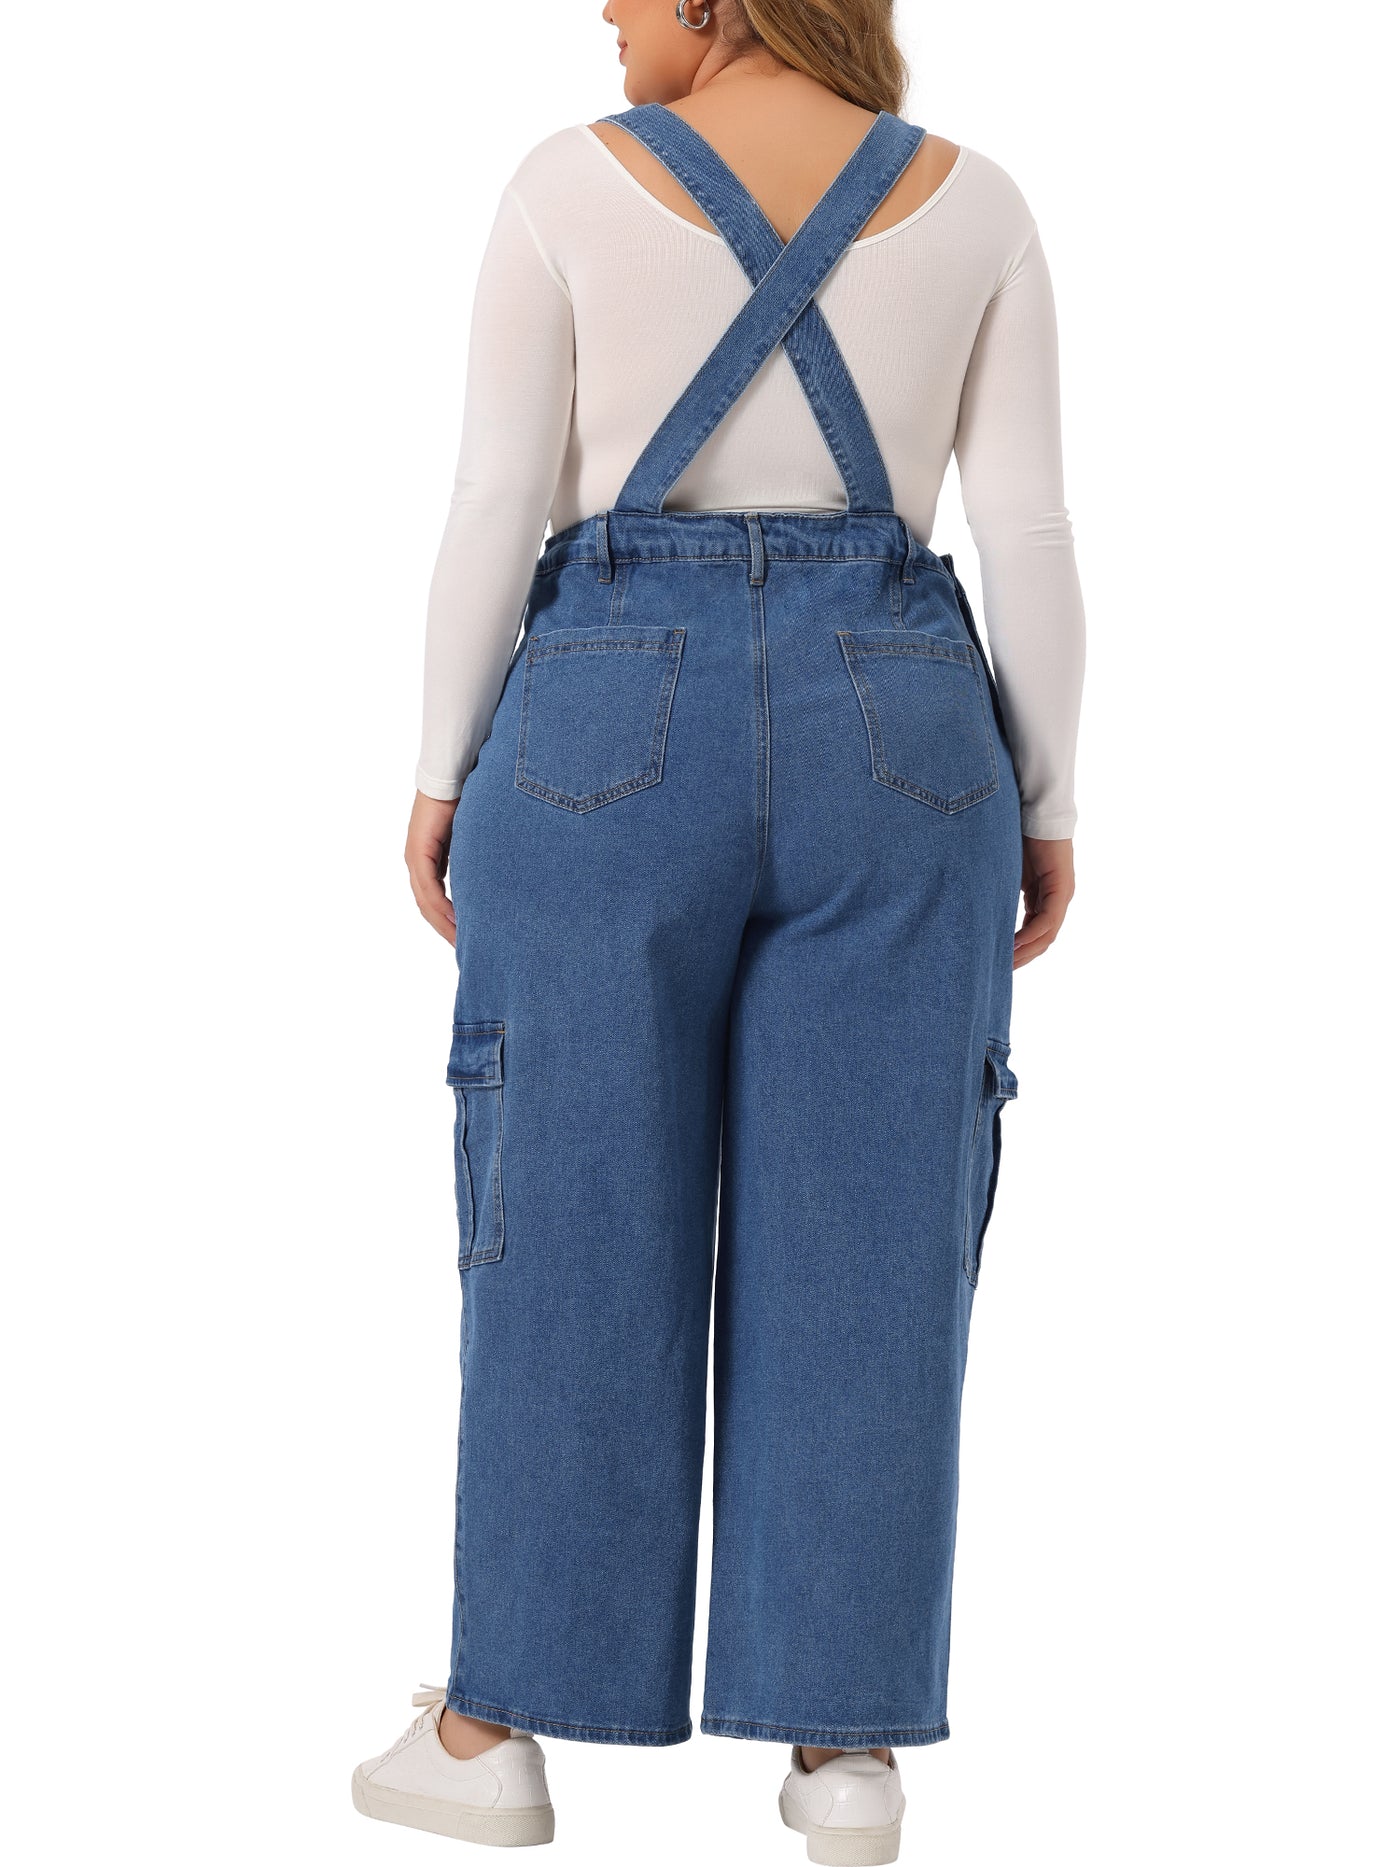 Bublédon Plus Size Denim Overalls Pants for Women Bib Jeans Pockets Stretch Adjustable Suspenders Jumpsuit